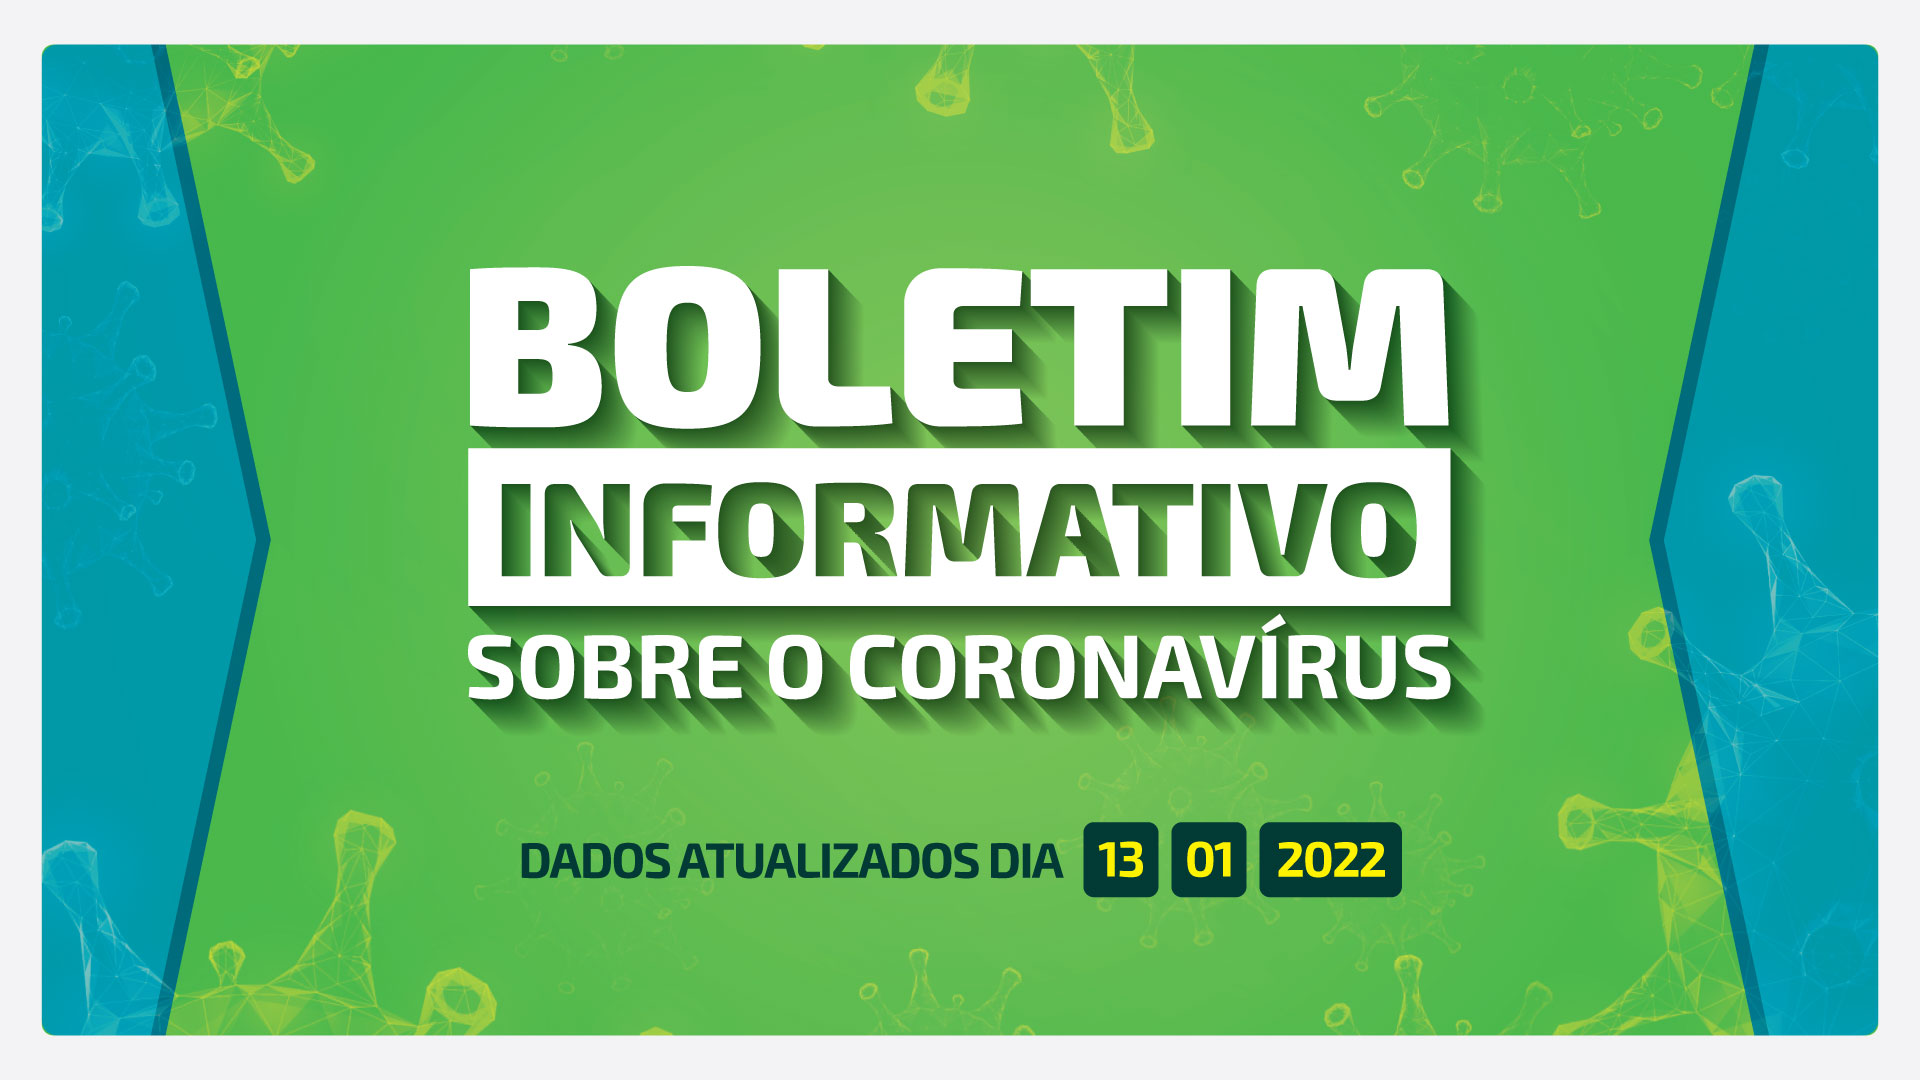 ATUALIZAÇÃO BOLETIM COVID-19 - 13 DE JANEIRO DE 2022